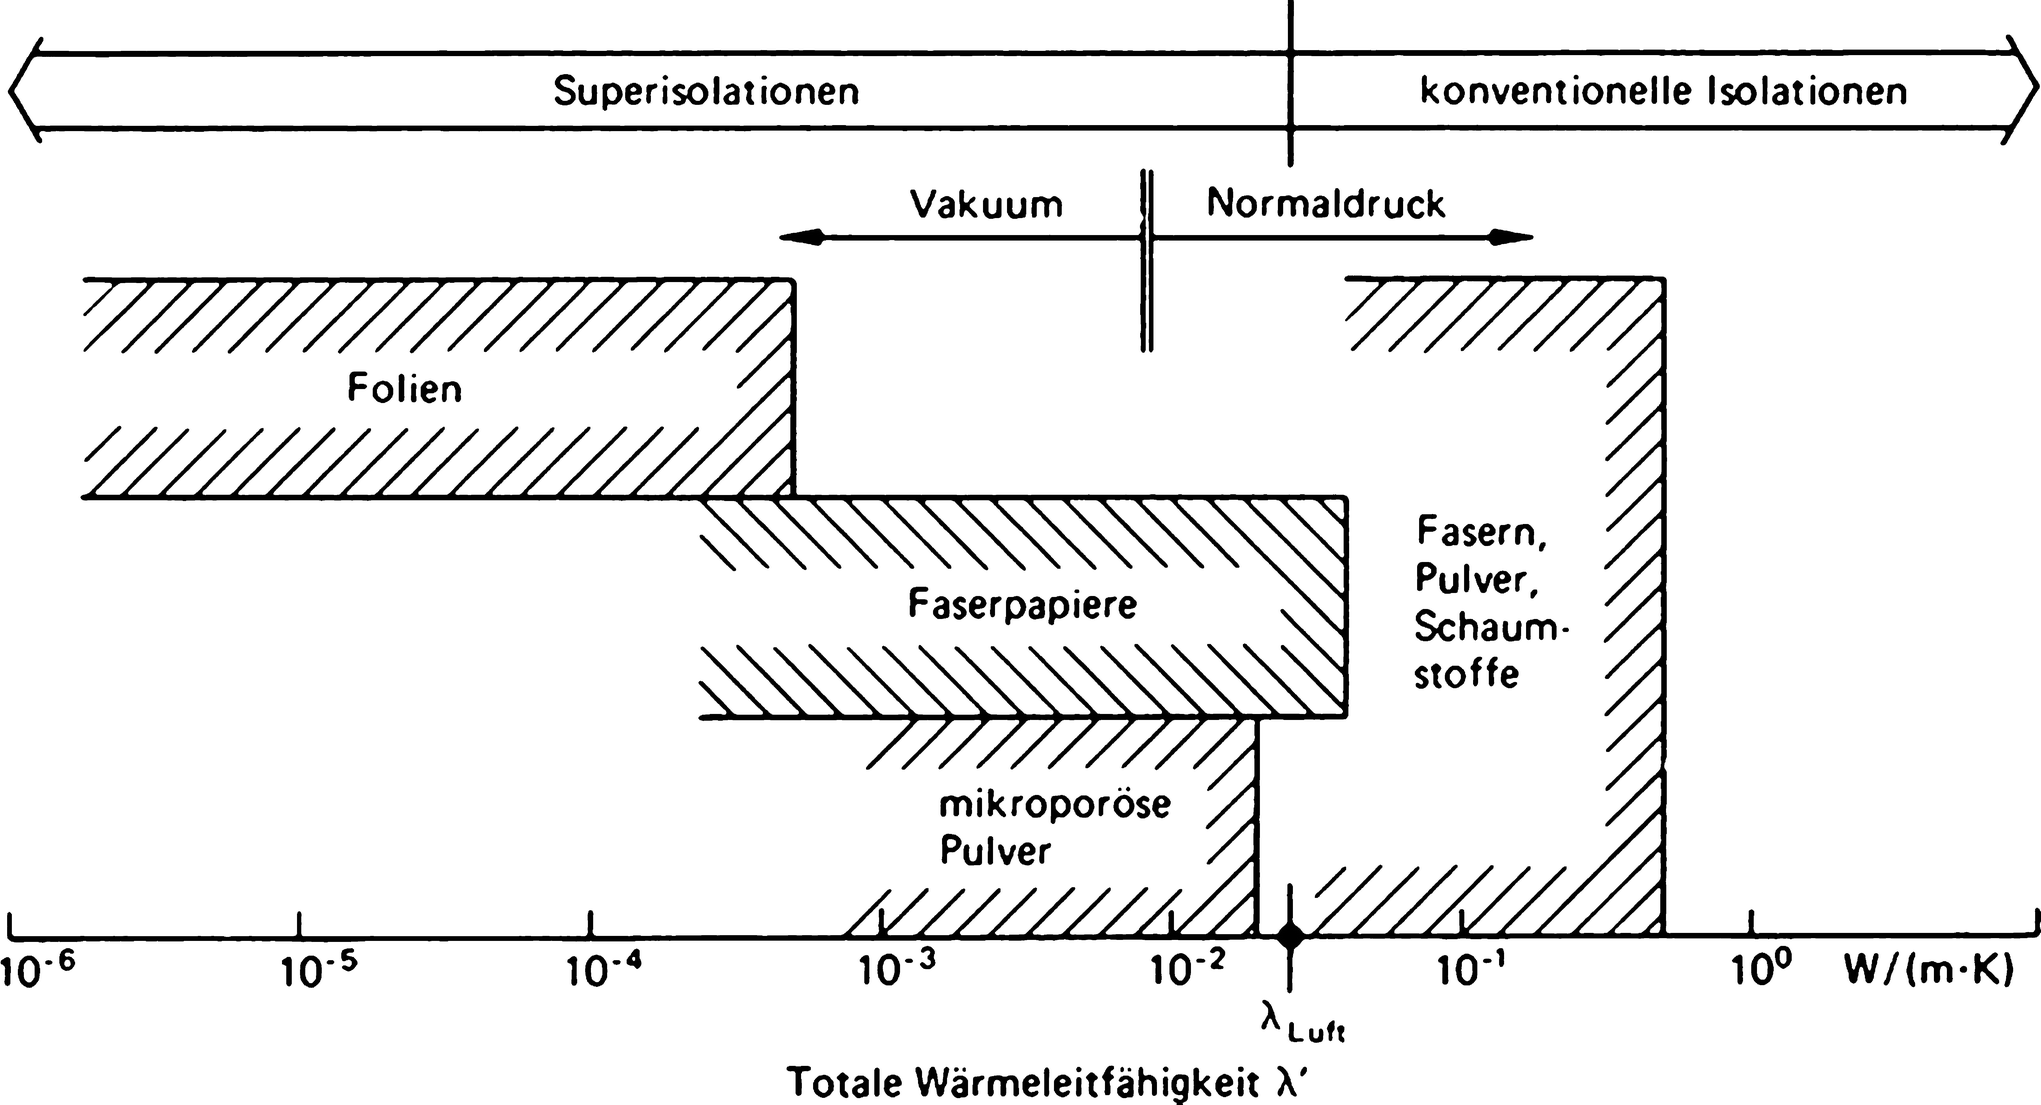 K6 Wärmestrahlung - Superisolierungen | SpringerLink